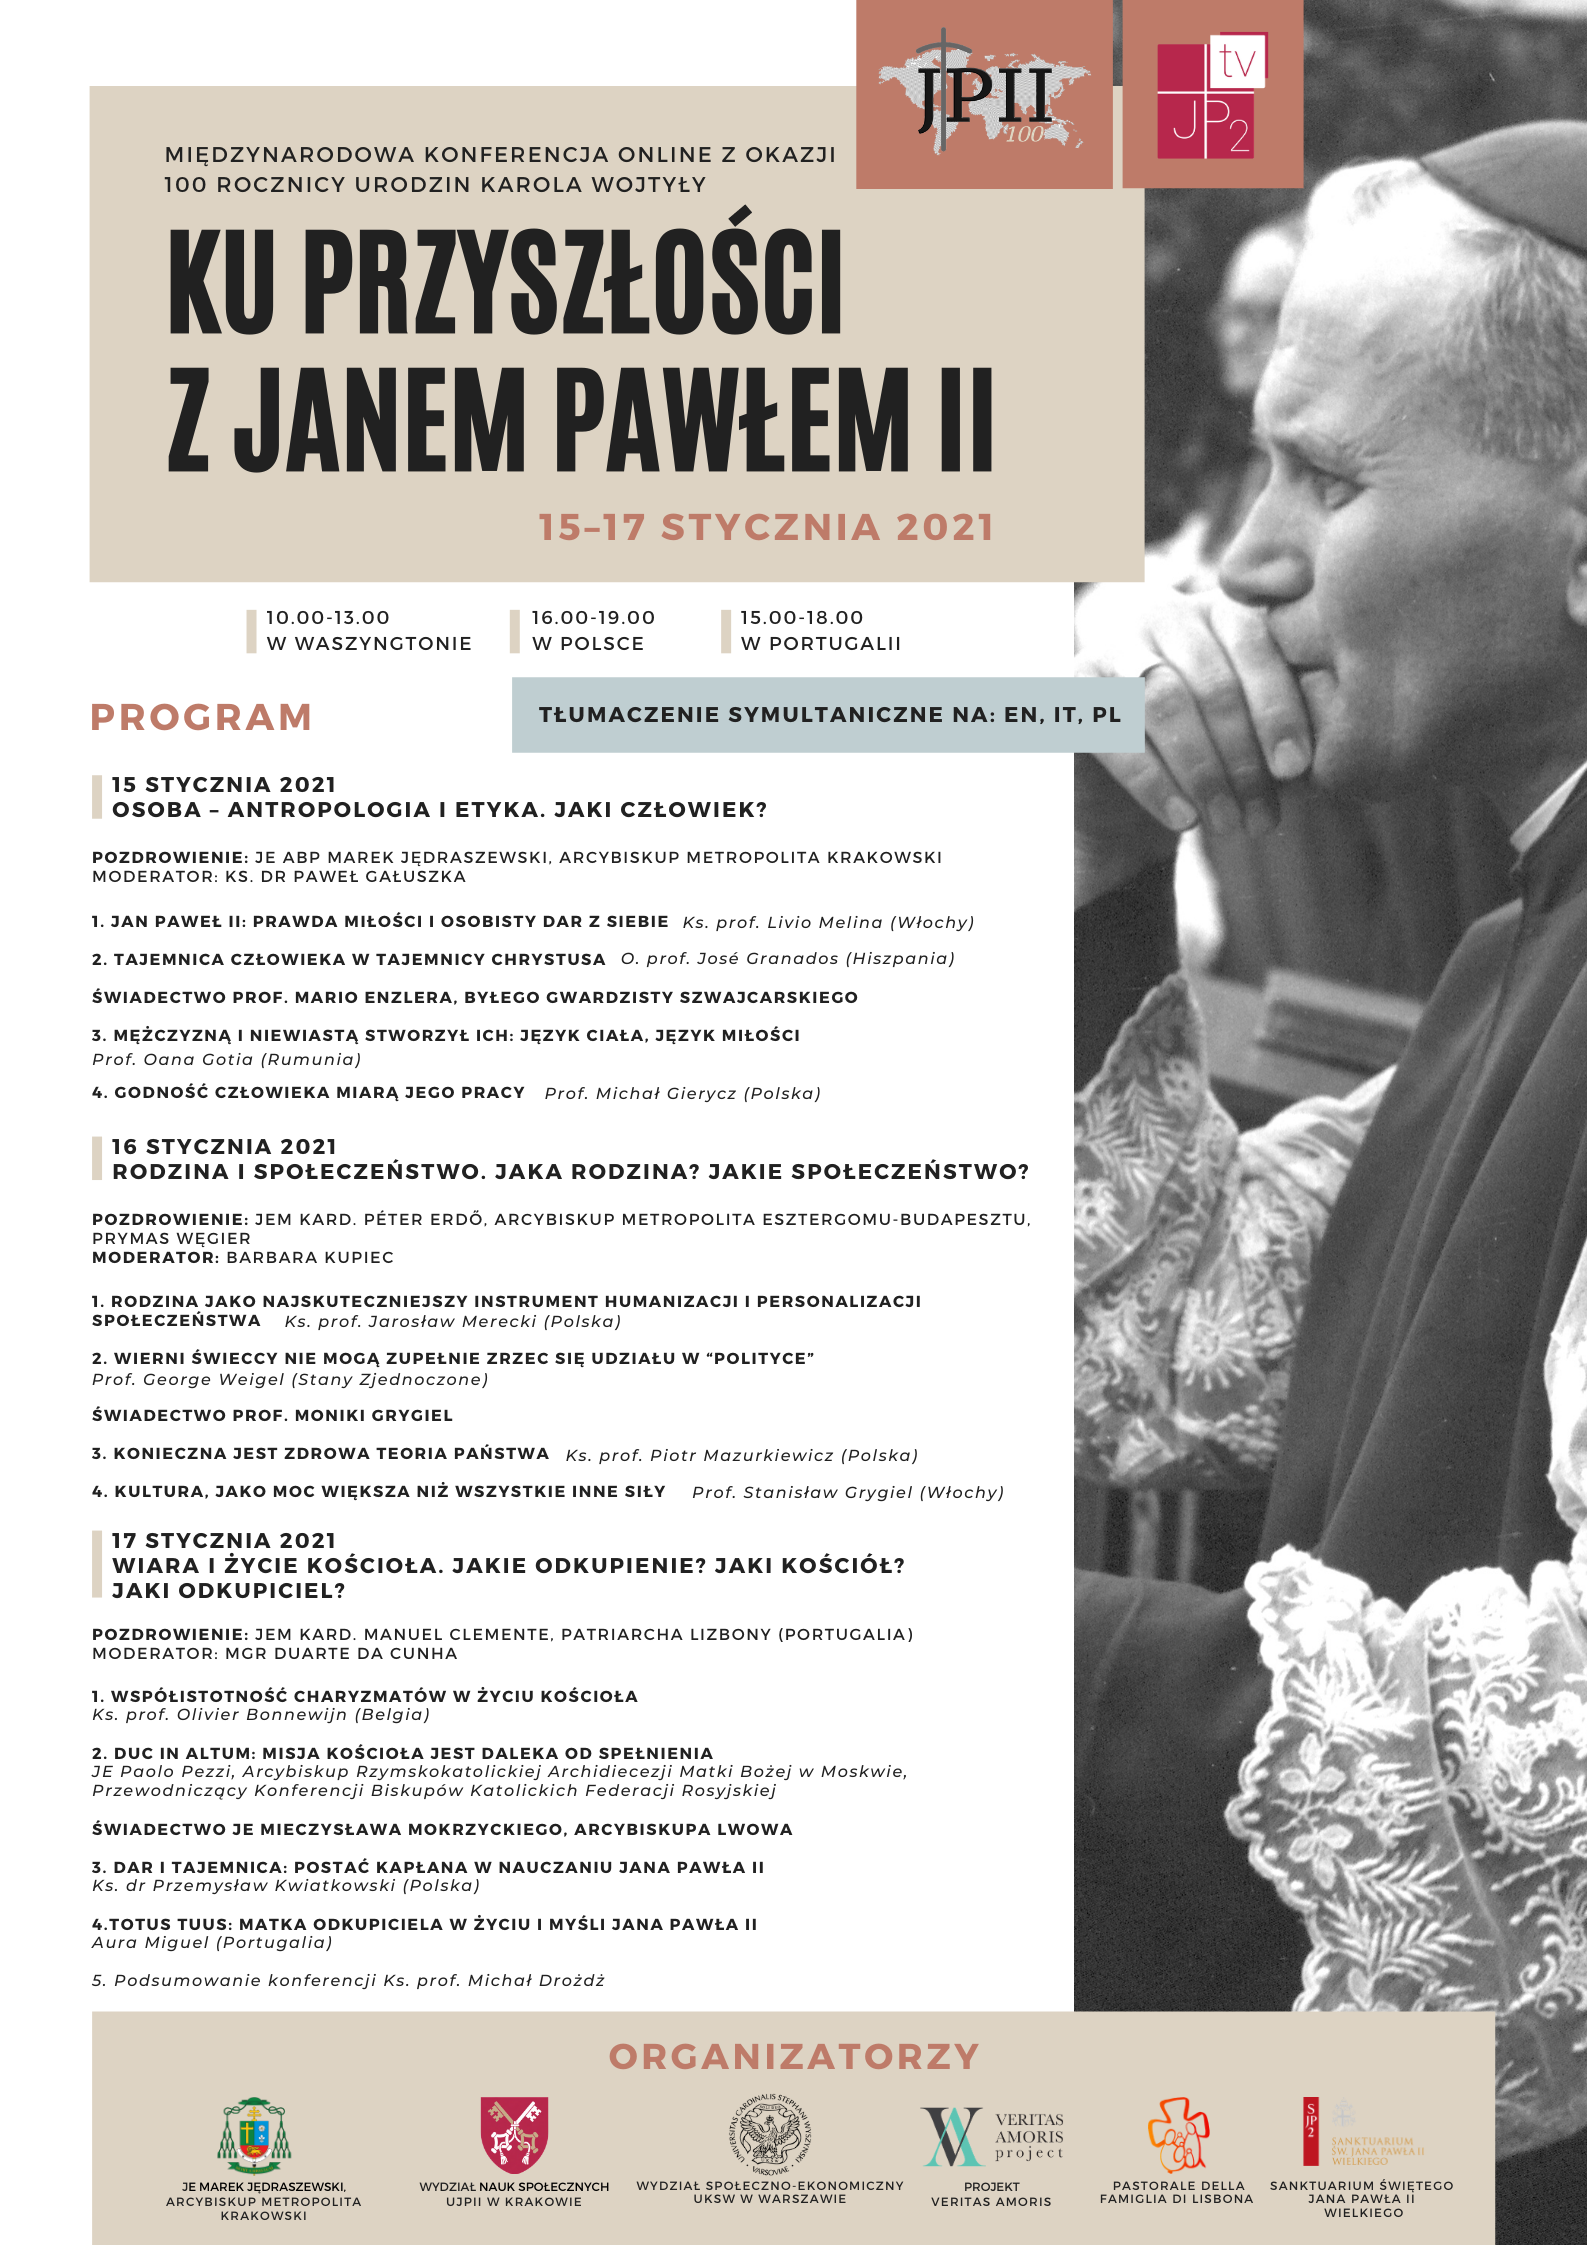 3. Dzień Międzynarodowej Konferencji z okazji 100. rocznicy urodzin Karola Wojtyły “Ku przyszłości z Janem Pawłem II”